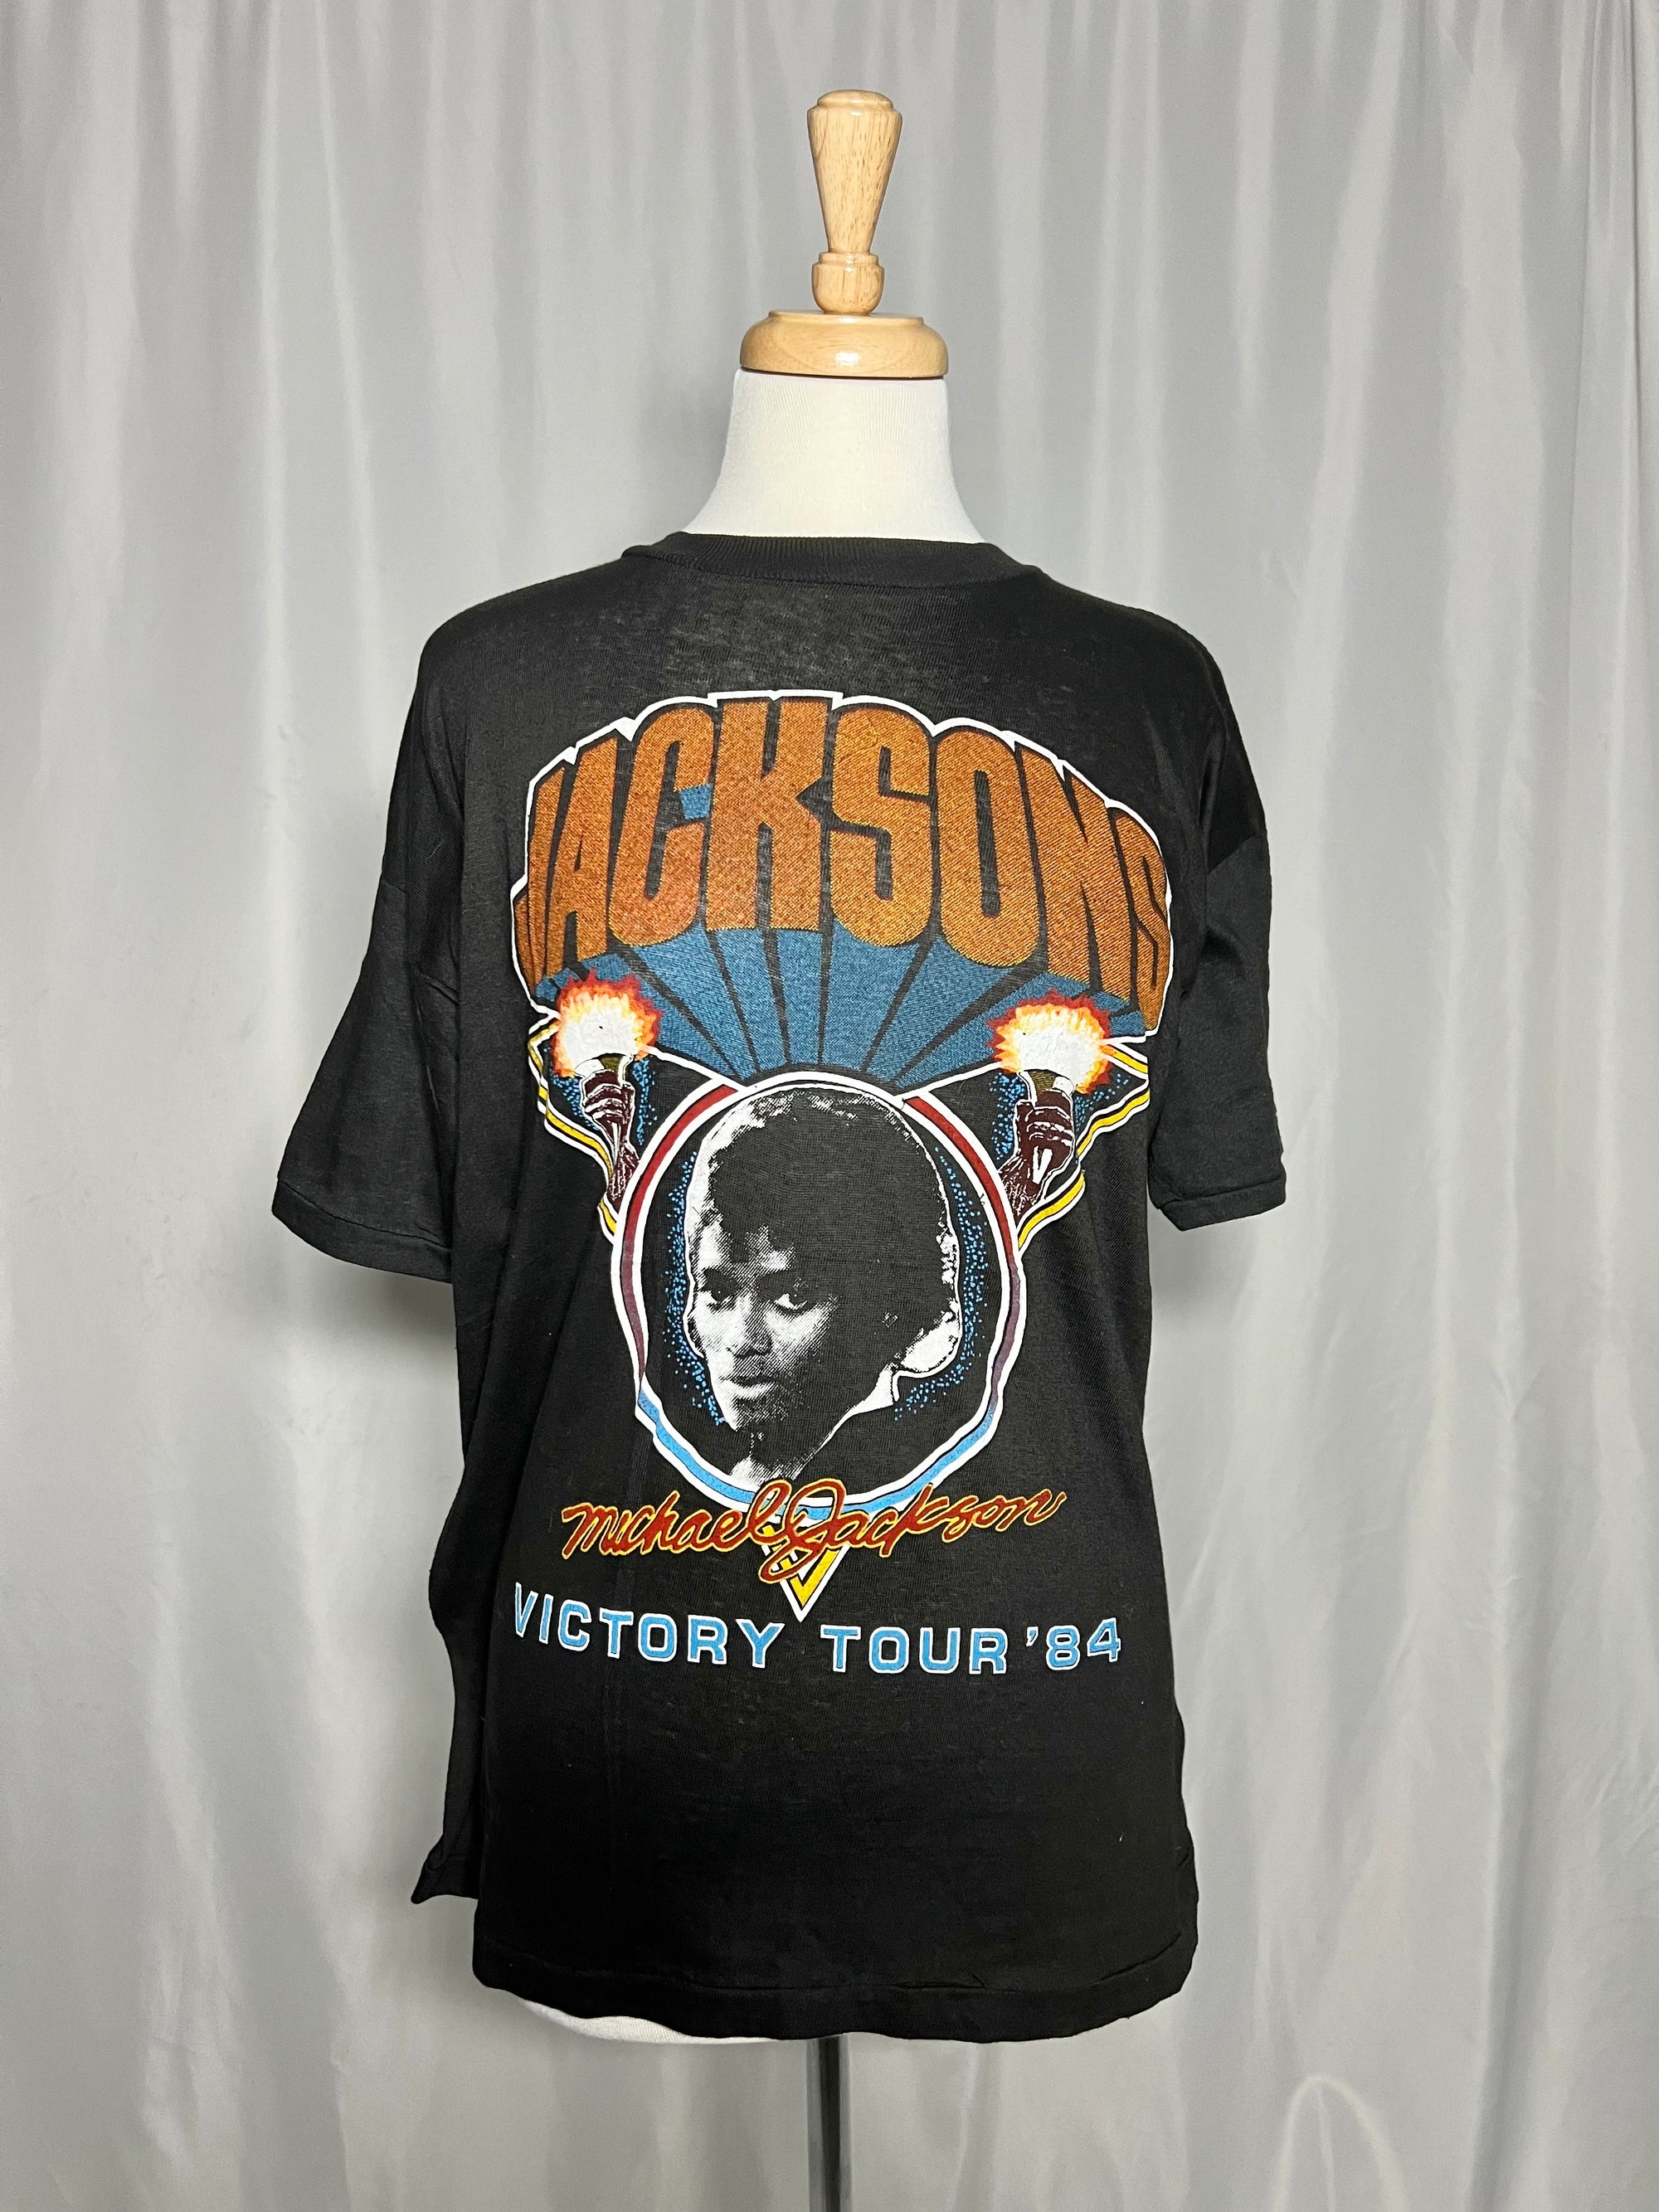 Tshirt Jacksons Victory tour '84 Rare